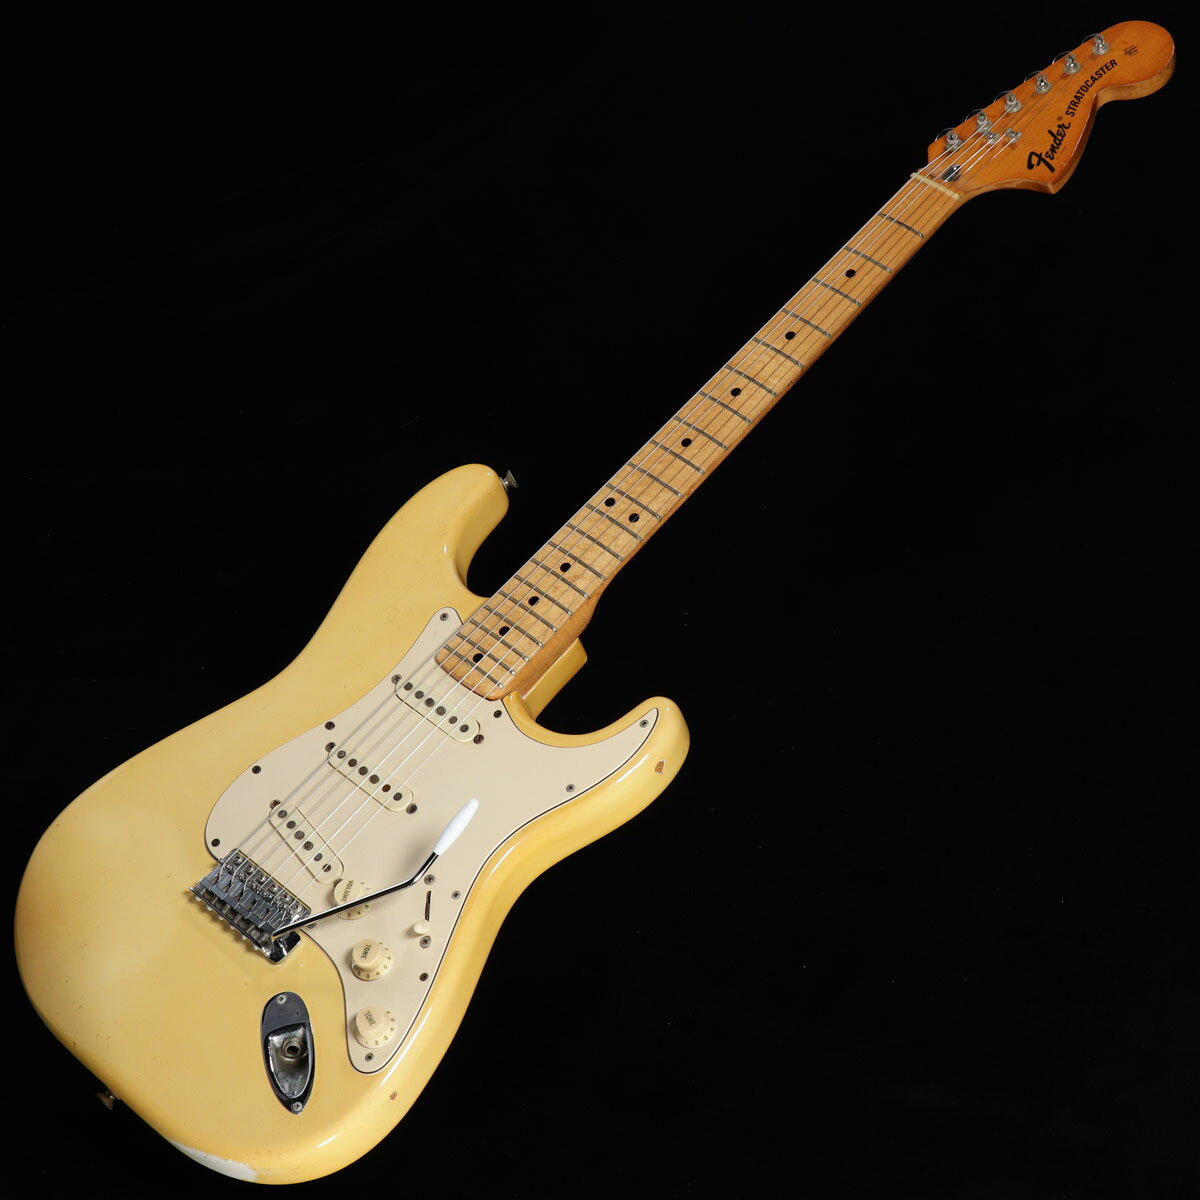 【Vintage】 FENDER / 1972年製 Stratocaster Alder Body Olympic White/Maple Finger Board 【S/N 380271】【渋谷店】《05VG》【値下げ】